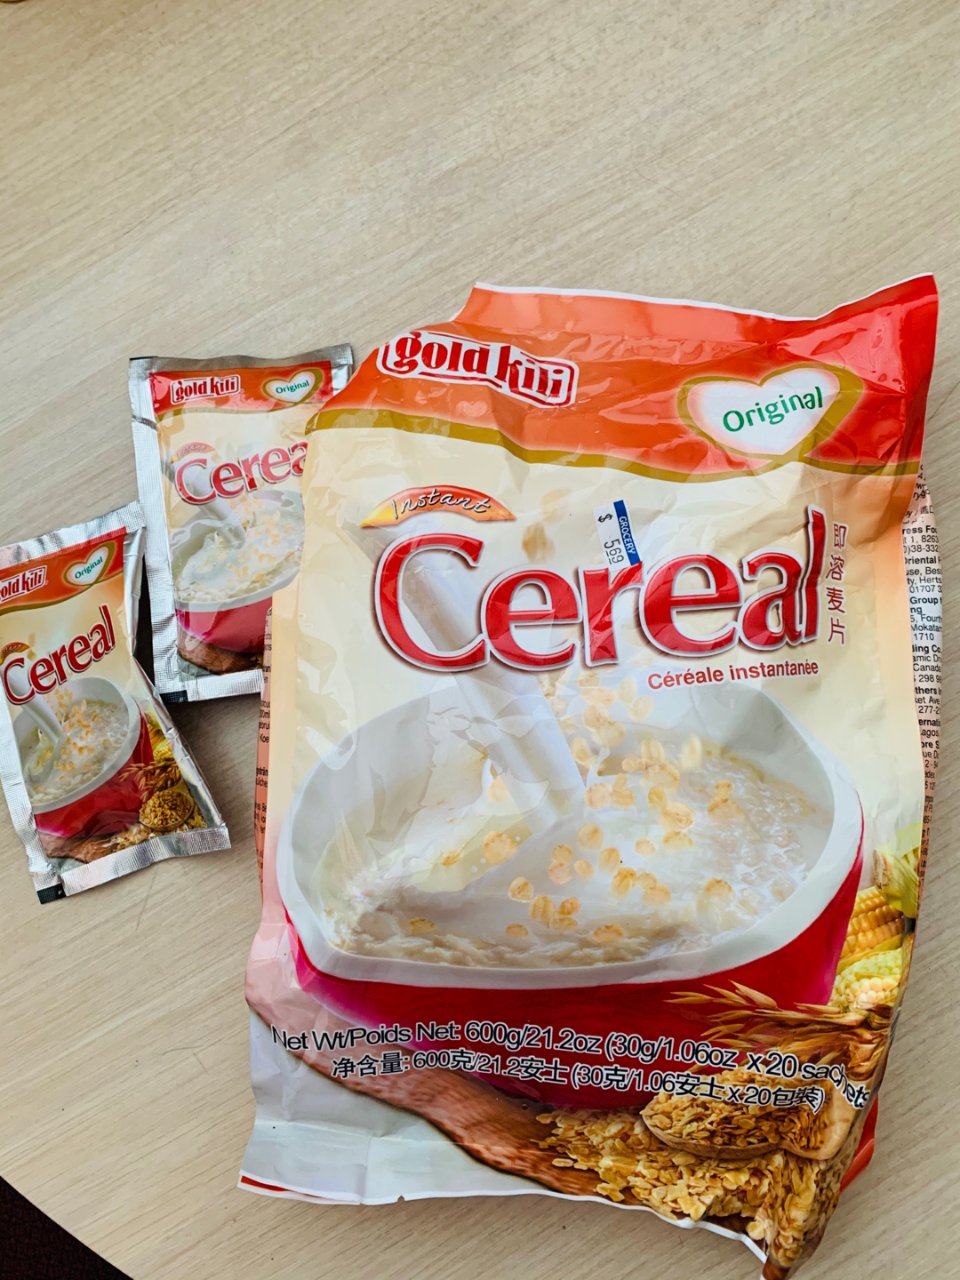 2. Cereal for Oatmea...